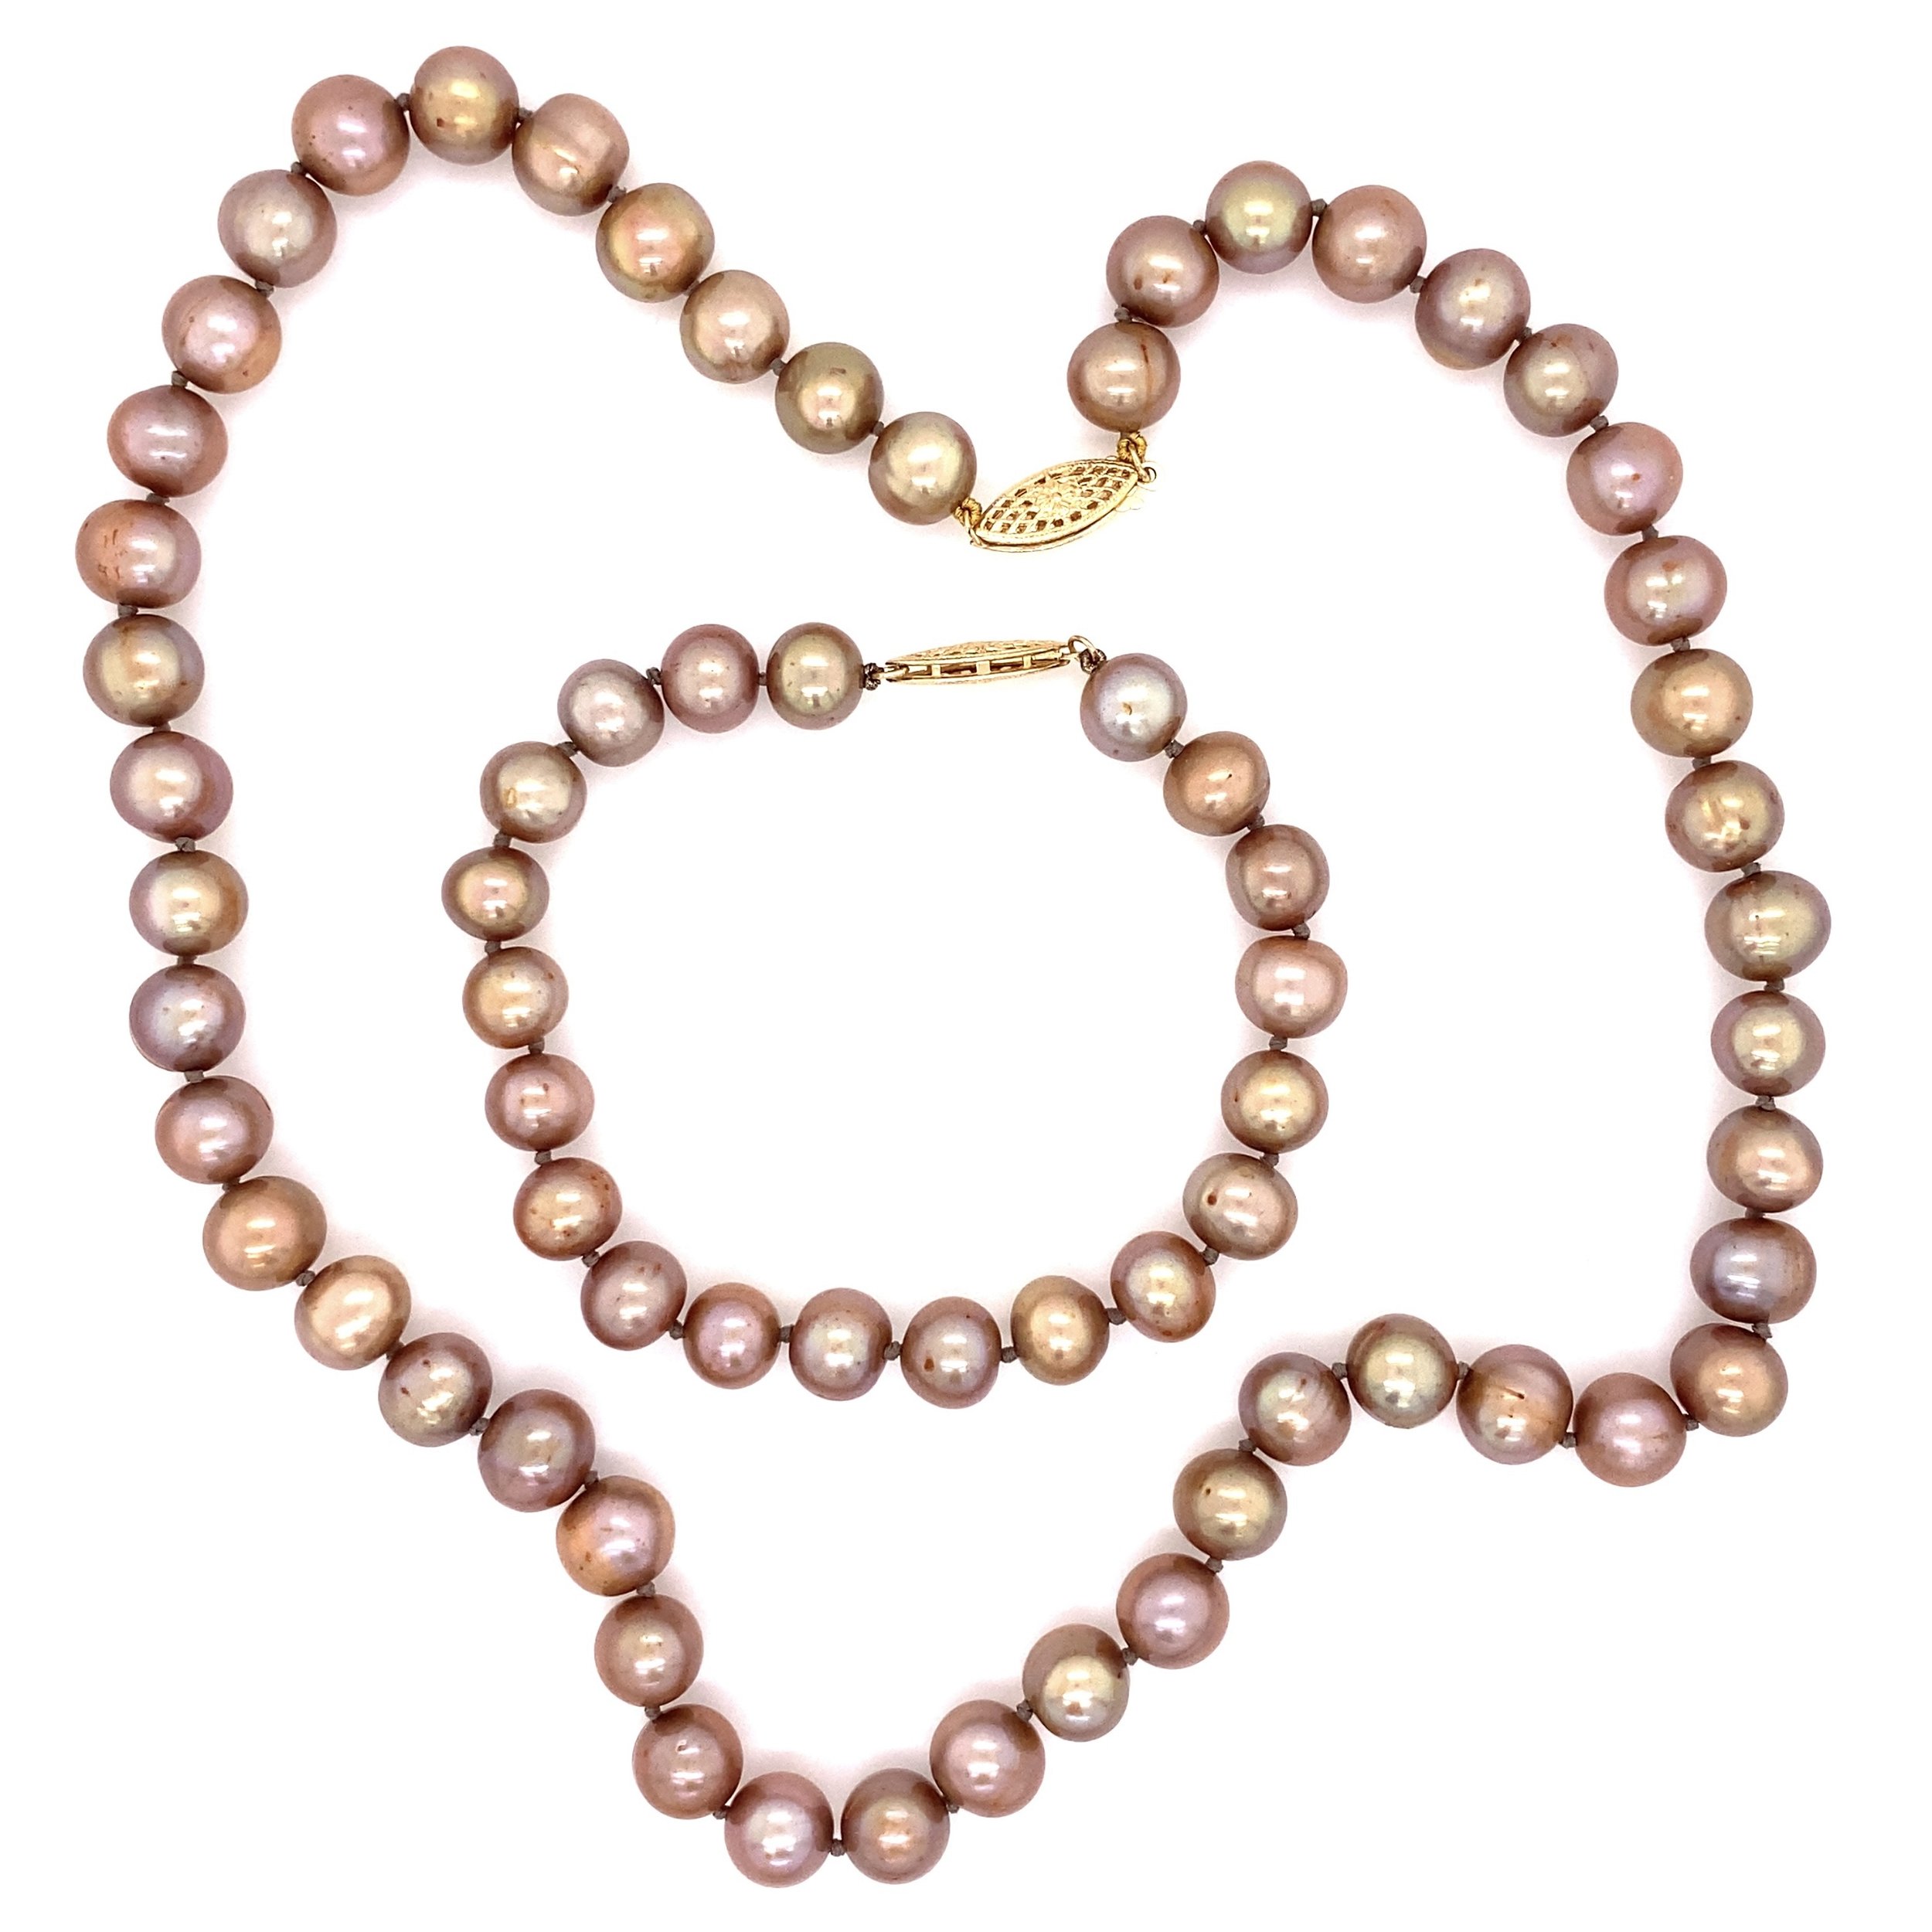 14K YG 7.5mm Brownish Golden Pearl Necklace Bracelet Set 18", 7.5"